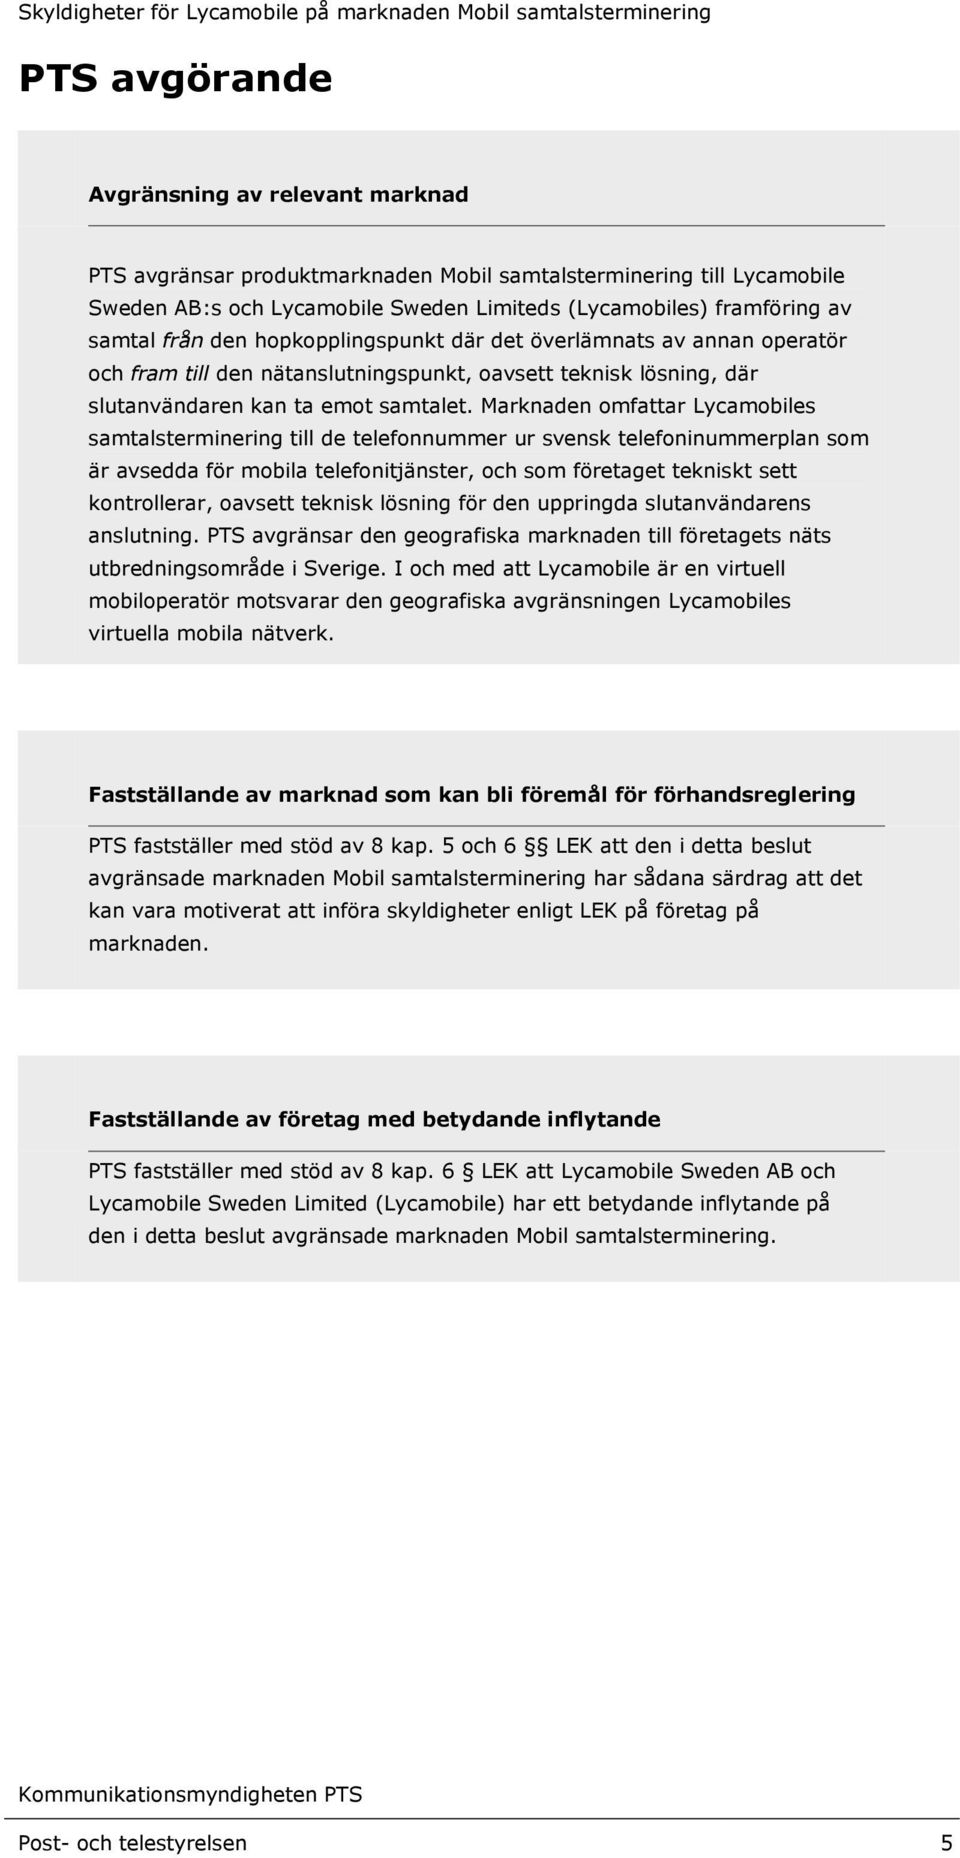 Marknaden omfattar Lycamobiles samtalsterminering till de telefonnummer ur svensk telefoninummerplan som är avsedda för mobila telefonitjänster, och som företaget tekniskt sett kontrollerar, oavsett